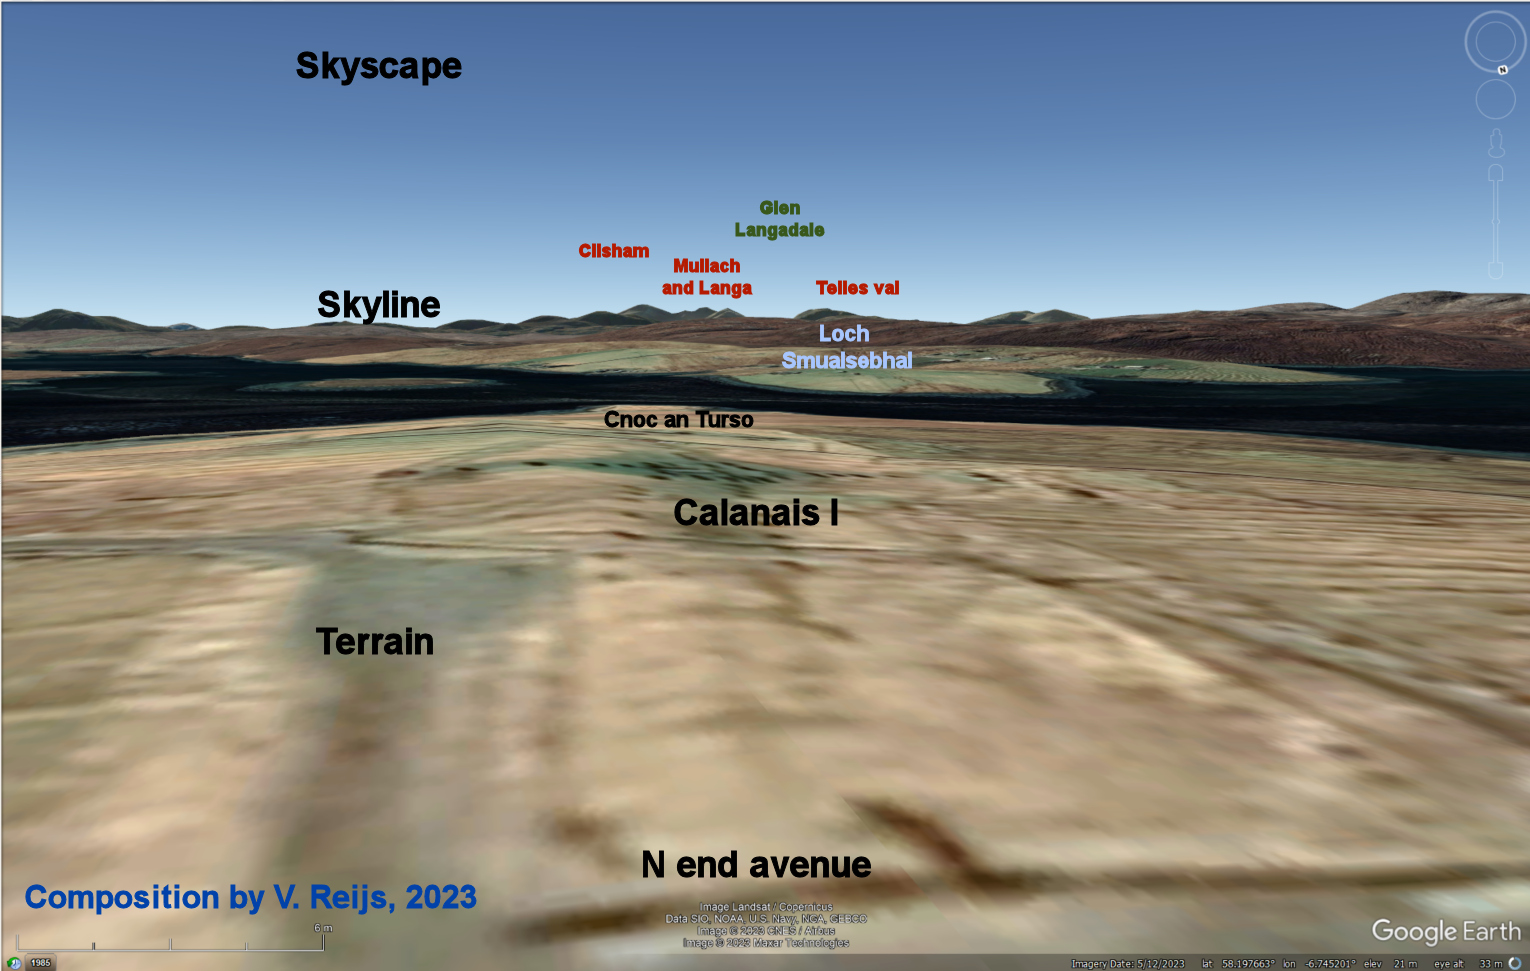 Overview of Calanais I